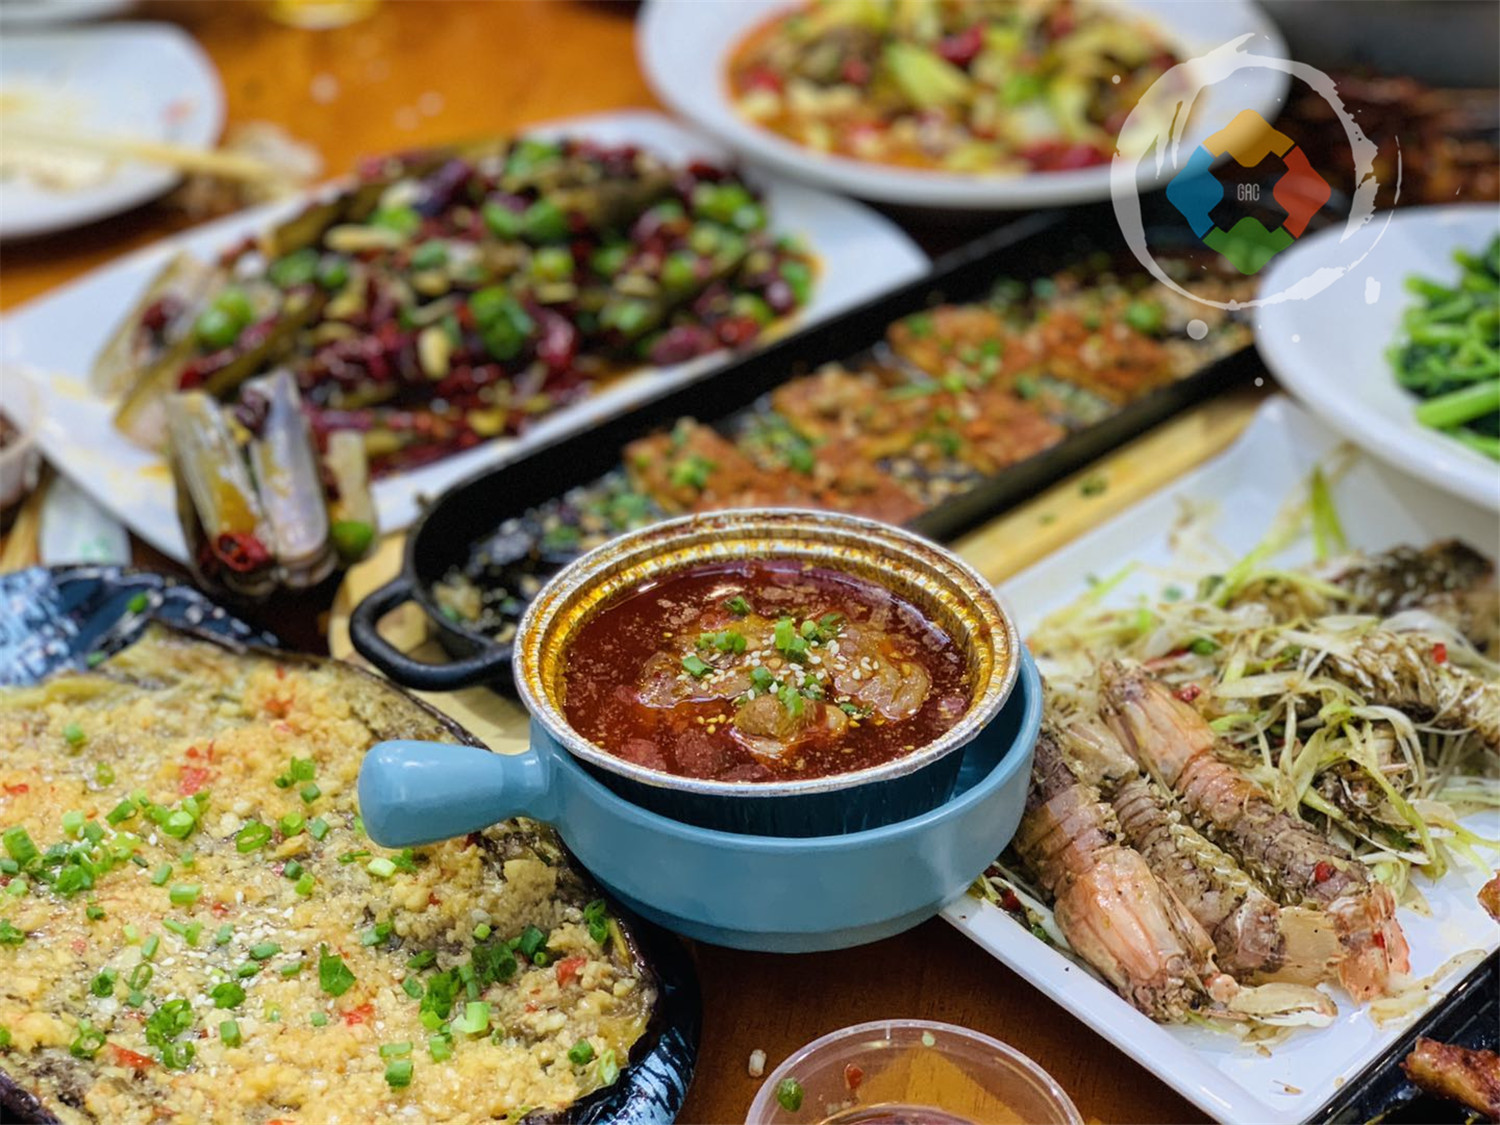 小龙虾,中国菜,龙虾,美食,夜宵,4K美食高清图片-千叶网